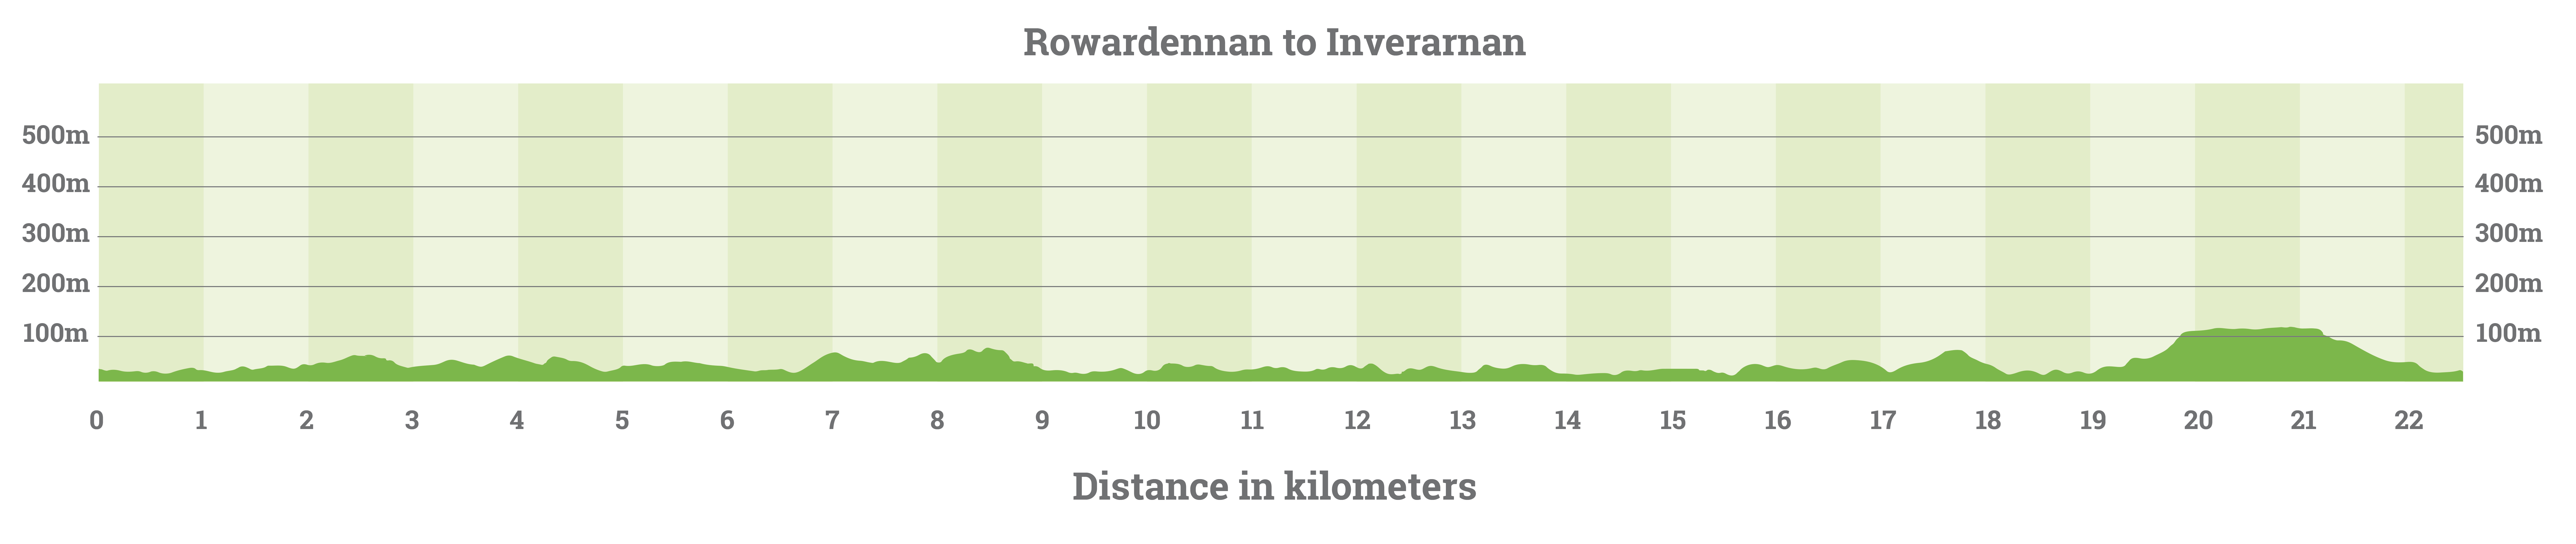 rowardennan-to-inverarnan-elevation